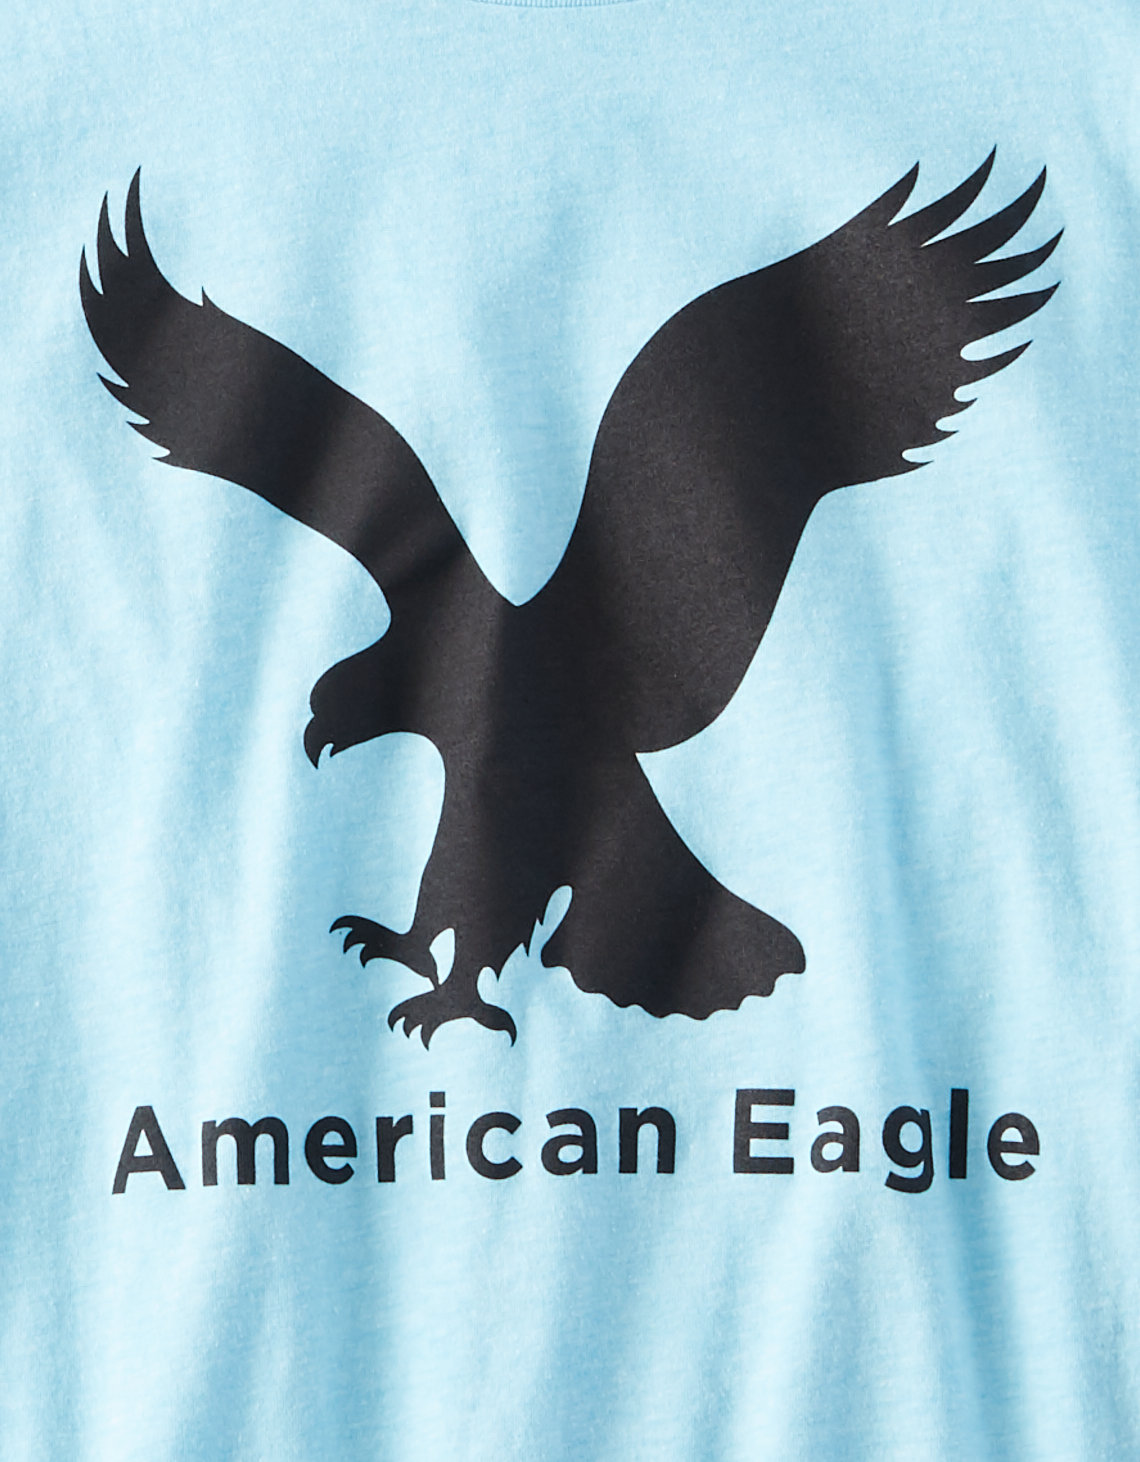 Фото футболка american eagle голубая от магазина American Eagle